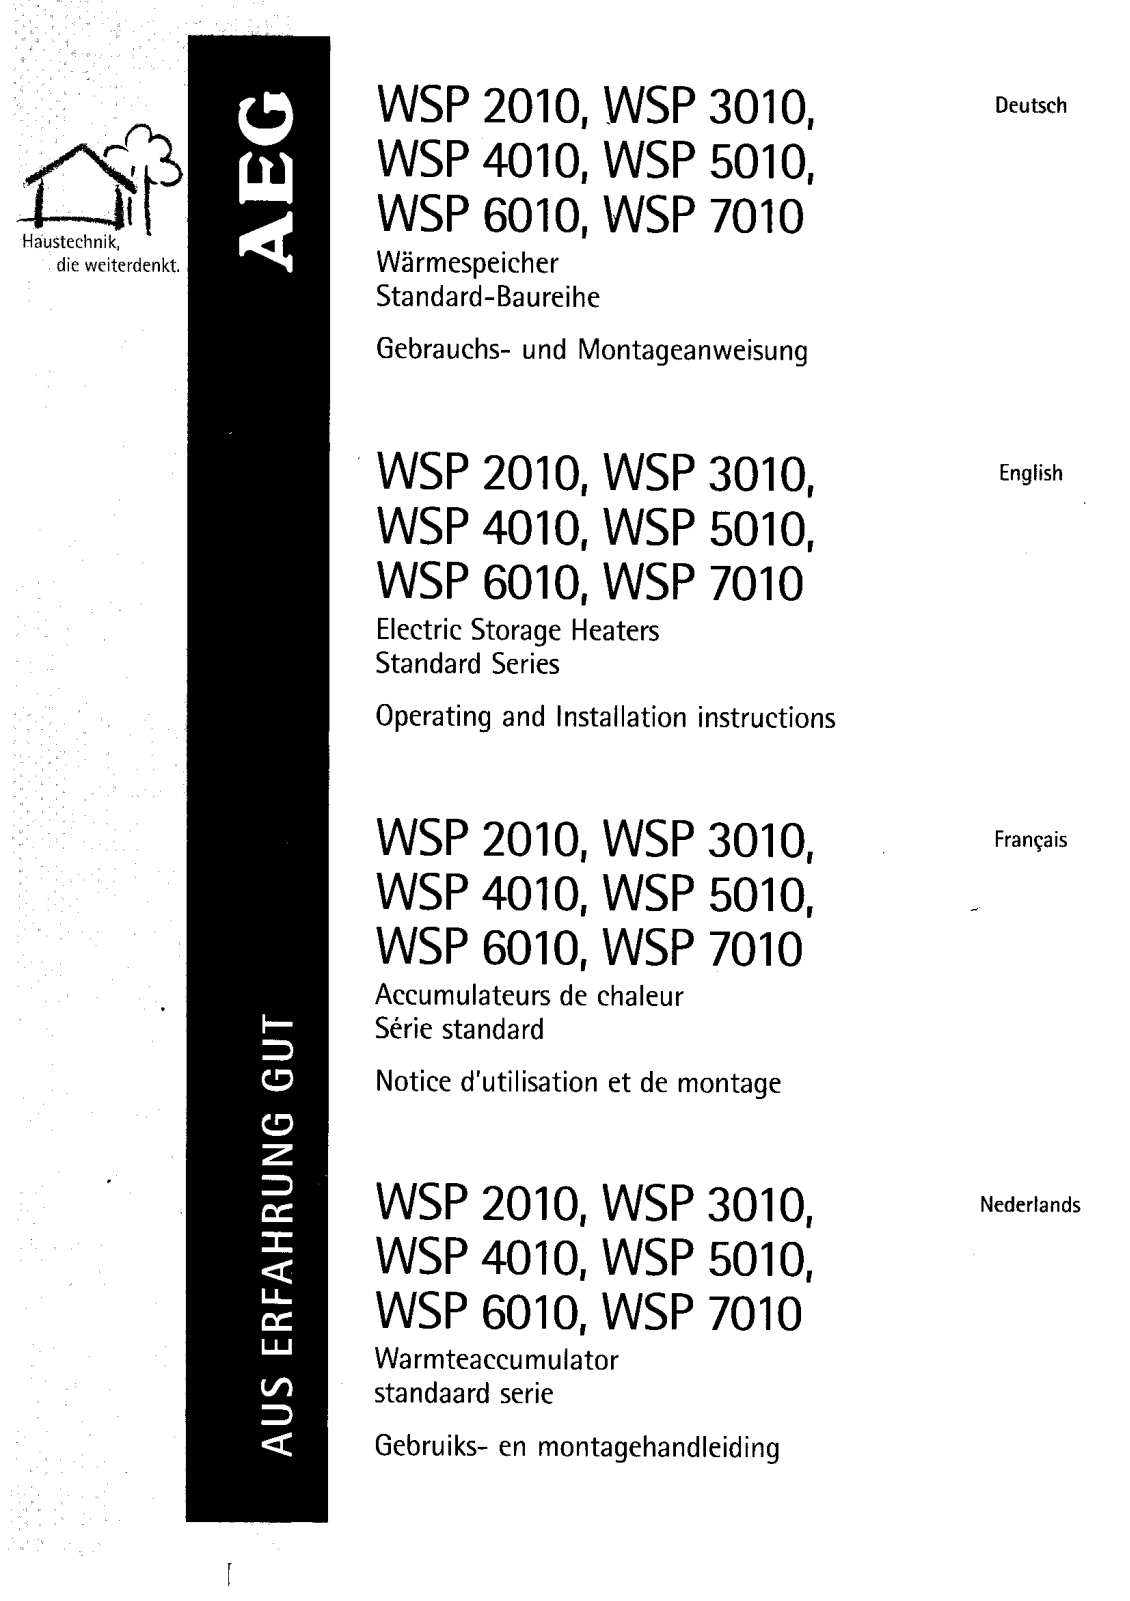 Aeg wsp 2010, wsp 3010, wsp 4010, wsp 5010, wsp 6010 Instructions Manual